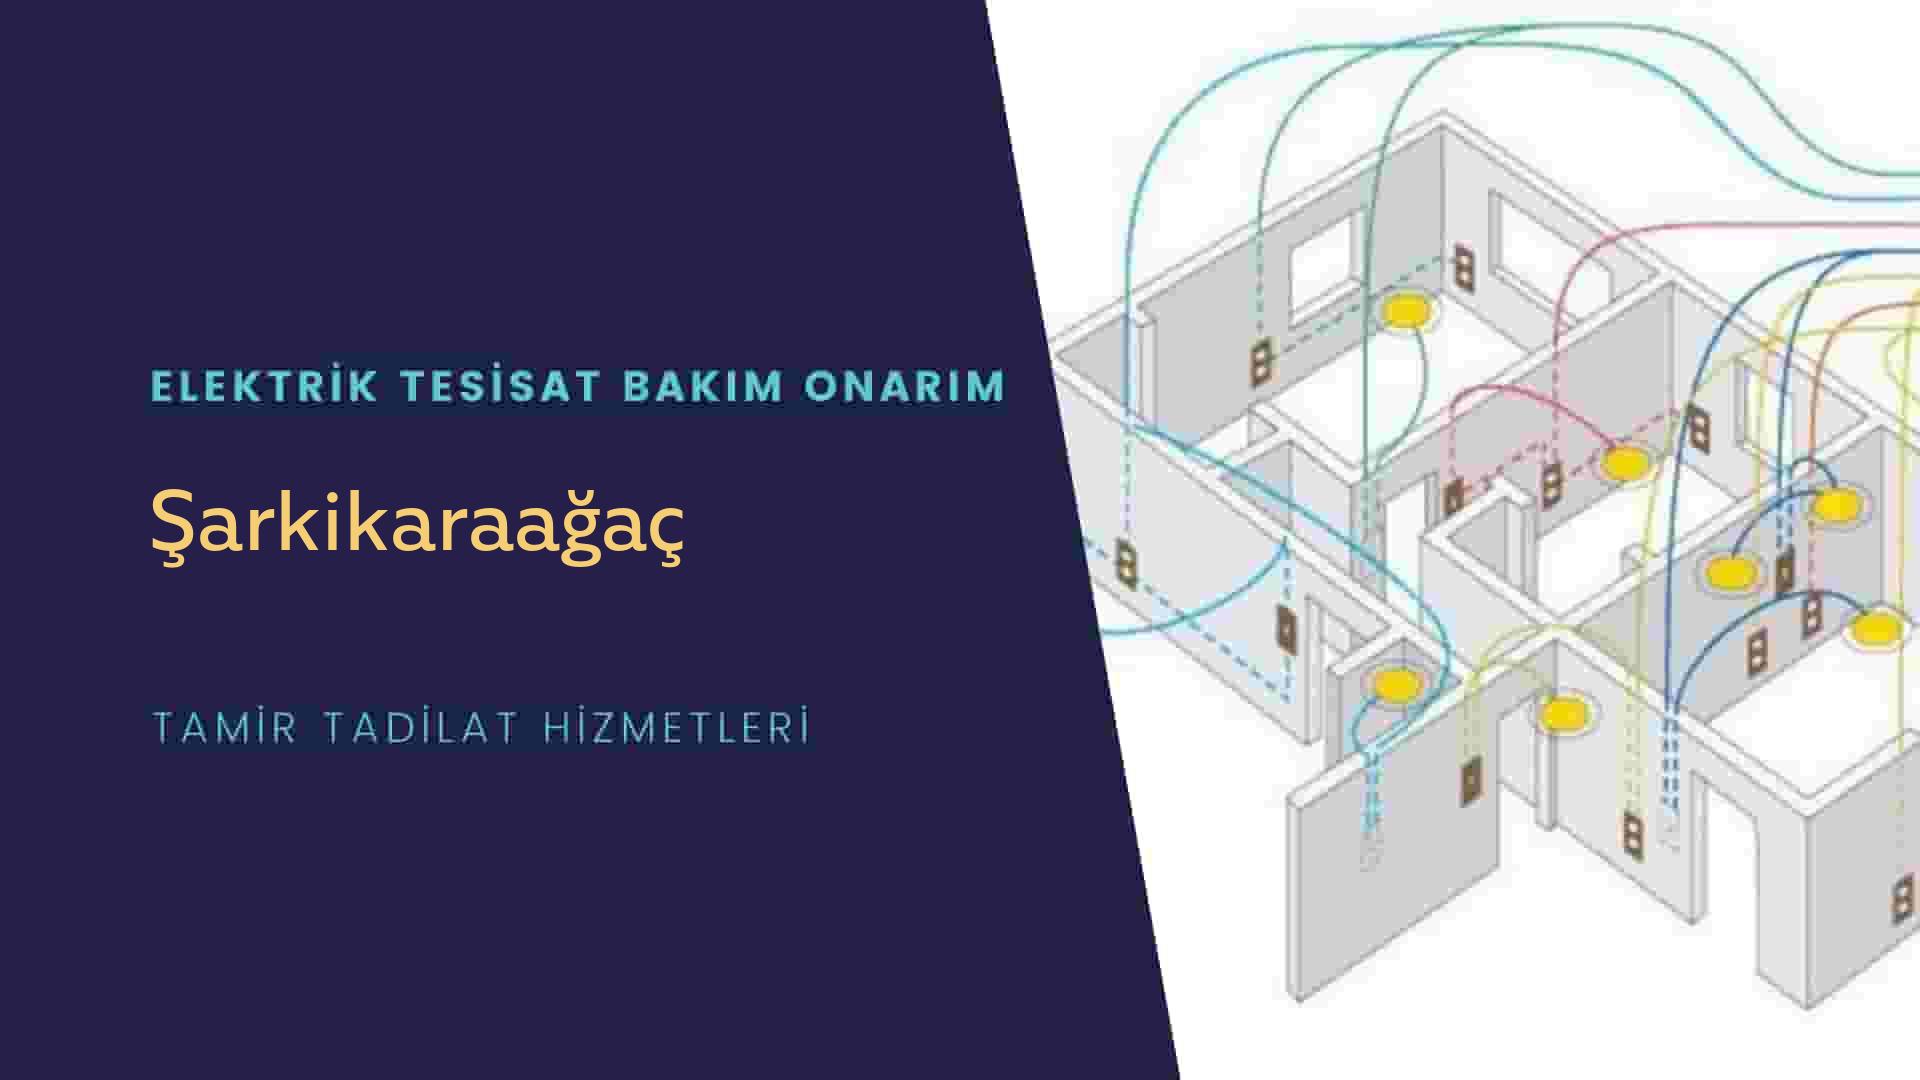 Şarkikaraağaç'ta elektrik tesisatı ustalarımı arıyorsunuz doğru adrestenizi Şarkikaraağaç elektrik tesisatı ustalarımız 7/24 sizlere hizmet vermekten mutluluk duyar.